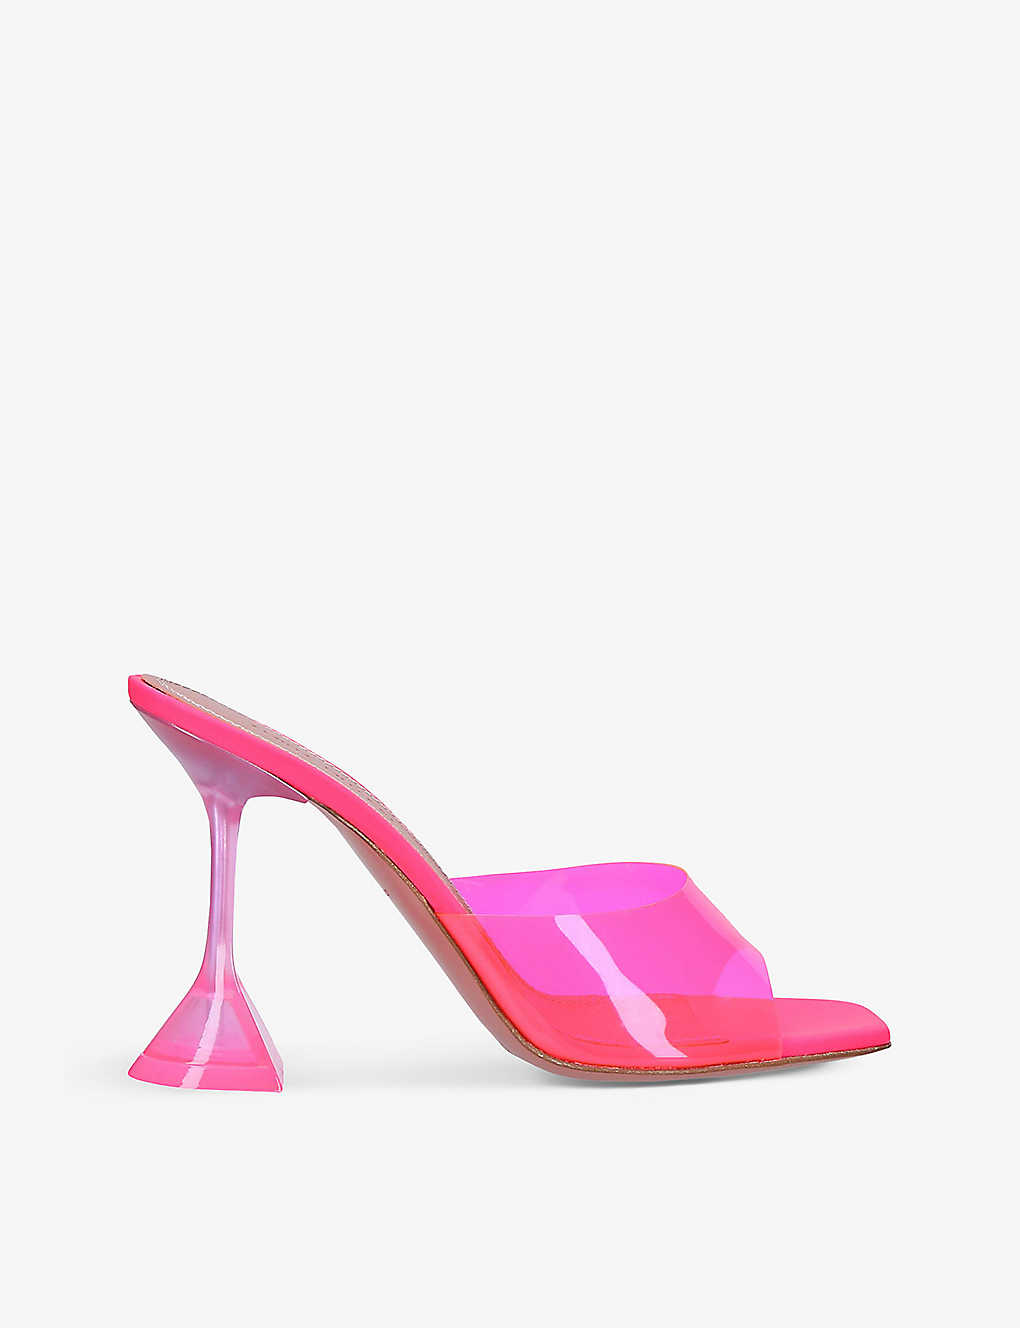 Amina Muaddi Womens Fuchsia Lupita Glass Square-toe Pvc Heeled Mules In Pink